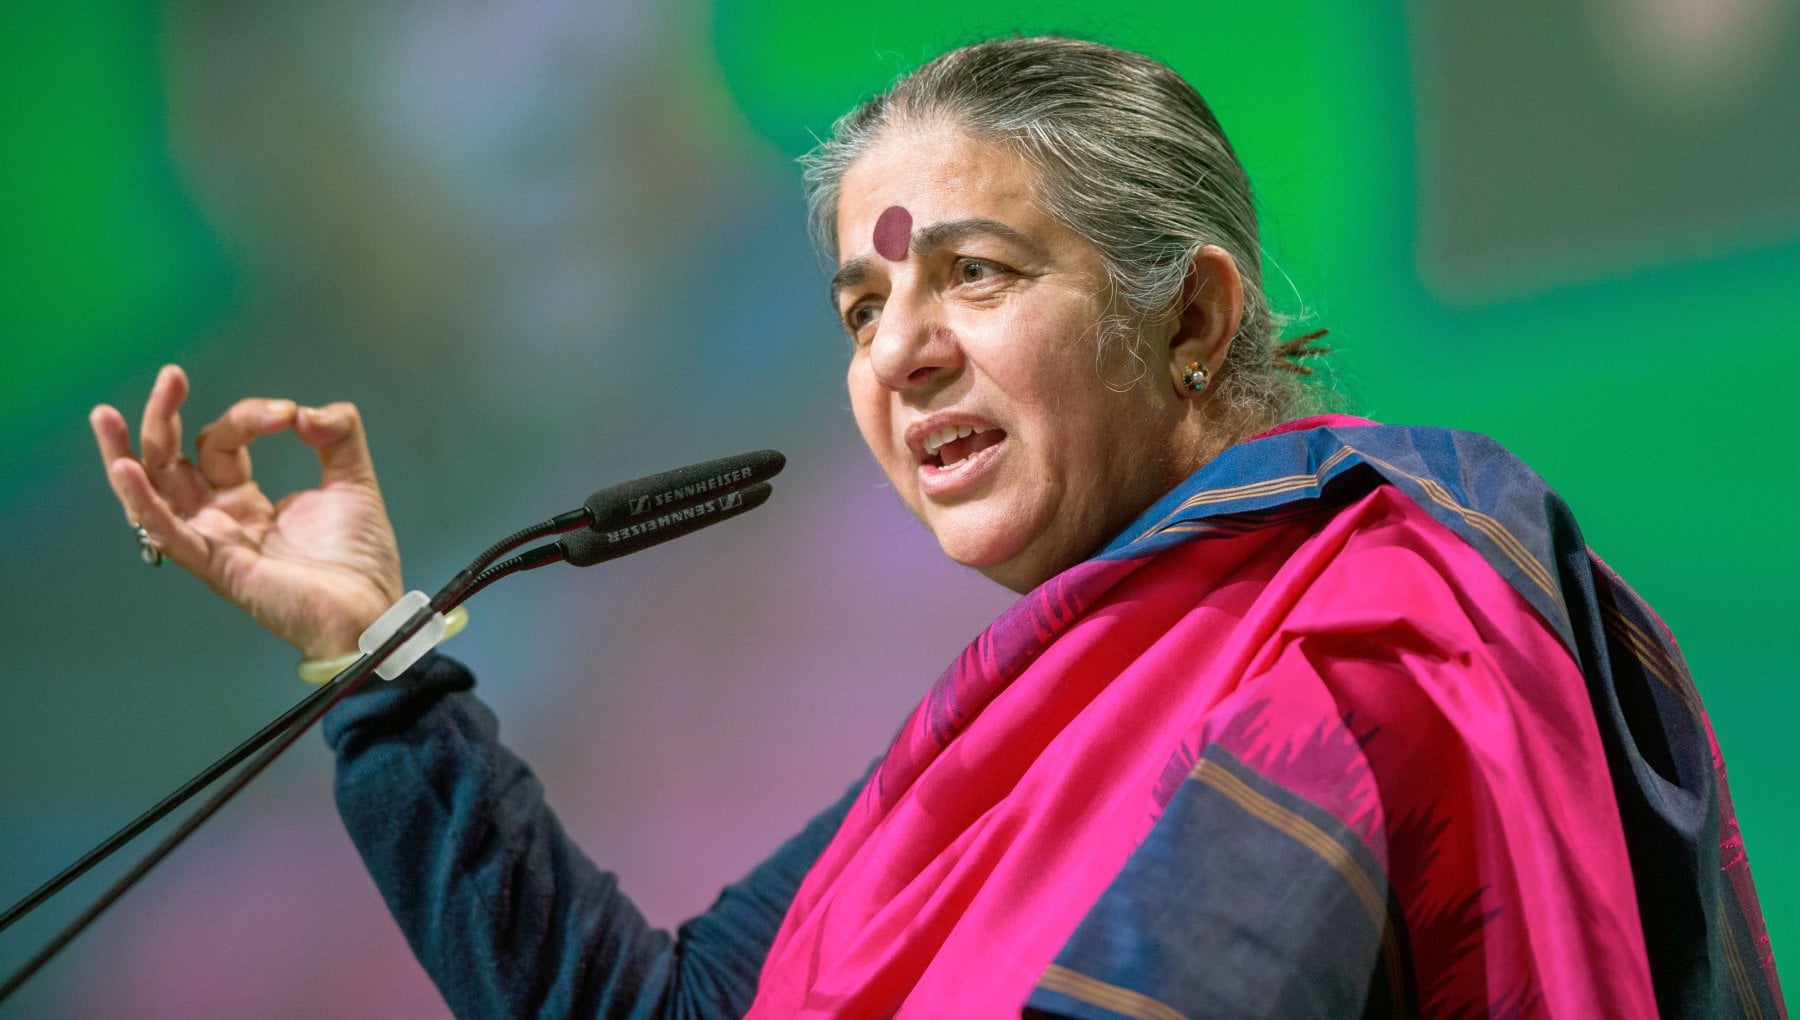 Vandana Shiva e il futuro dell'alimentazione: "Sovranità alimentare e agricoltura ecologica"